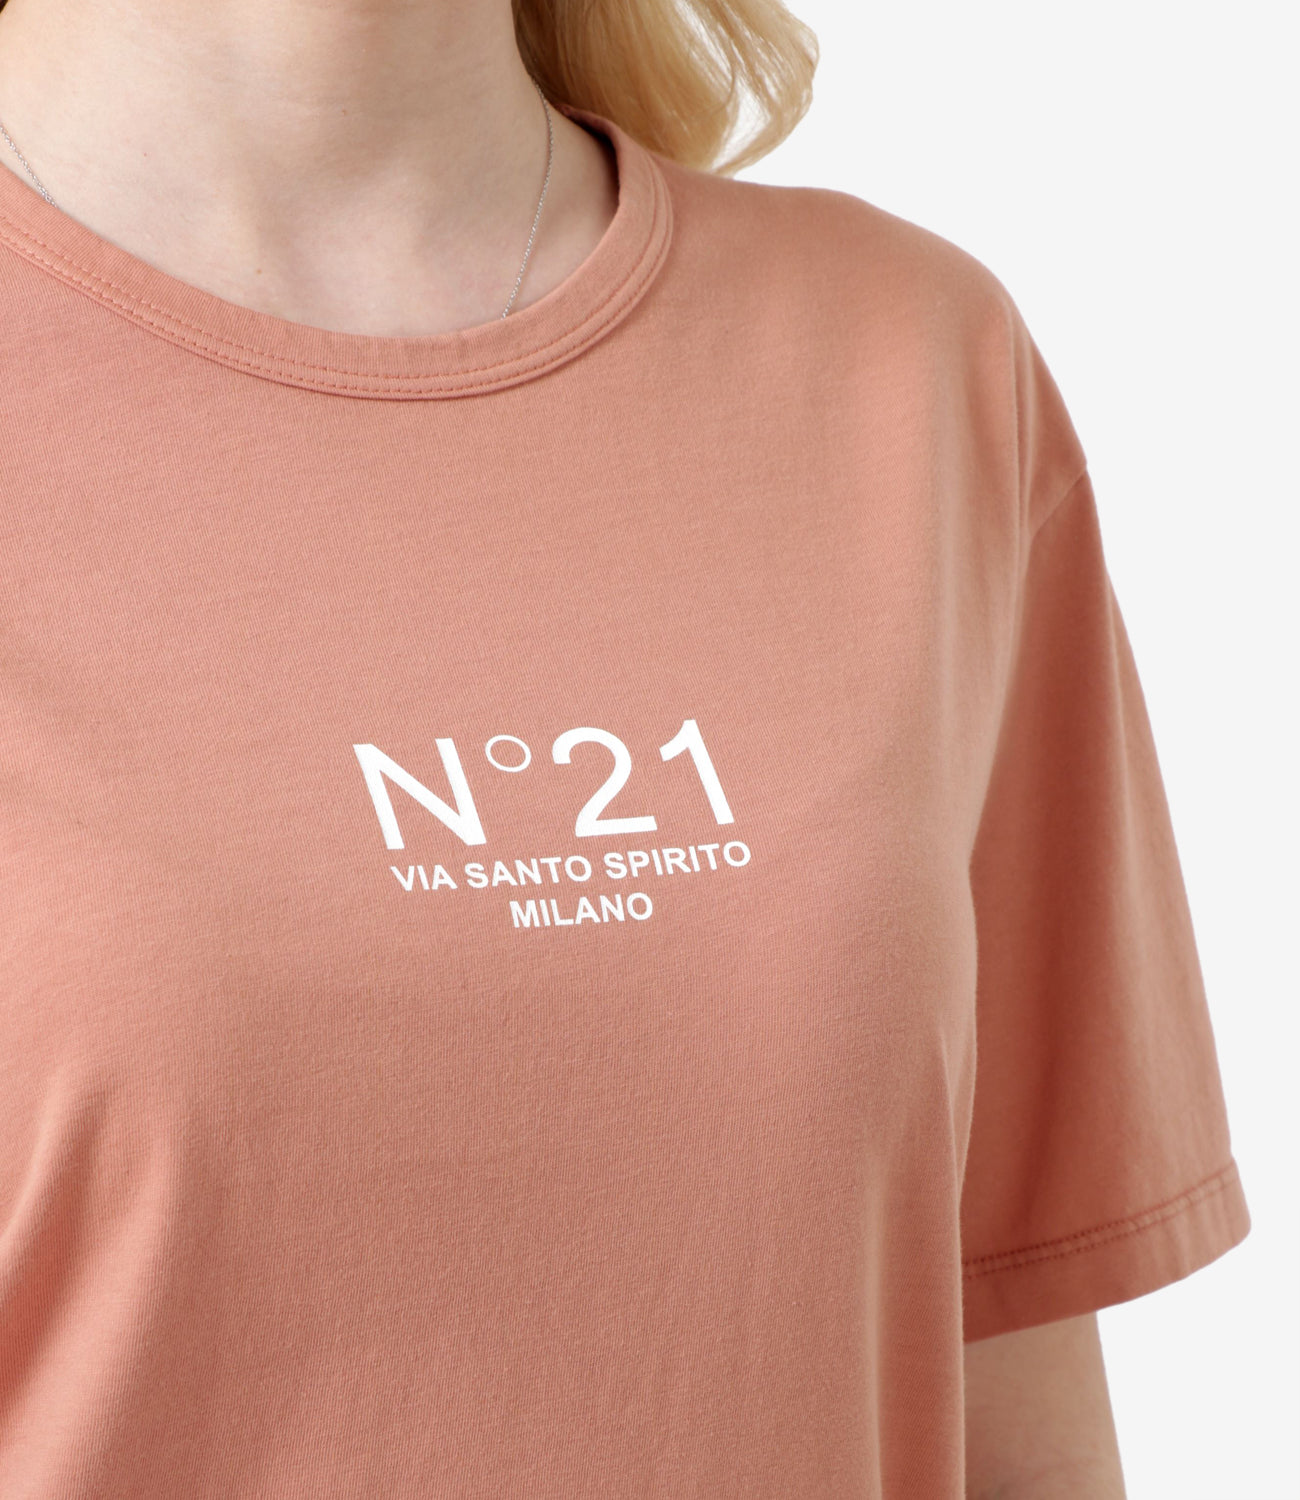 N 21 | T-Shirt Rosa Scuro